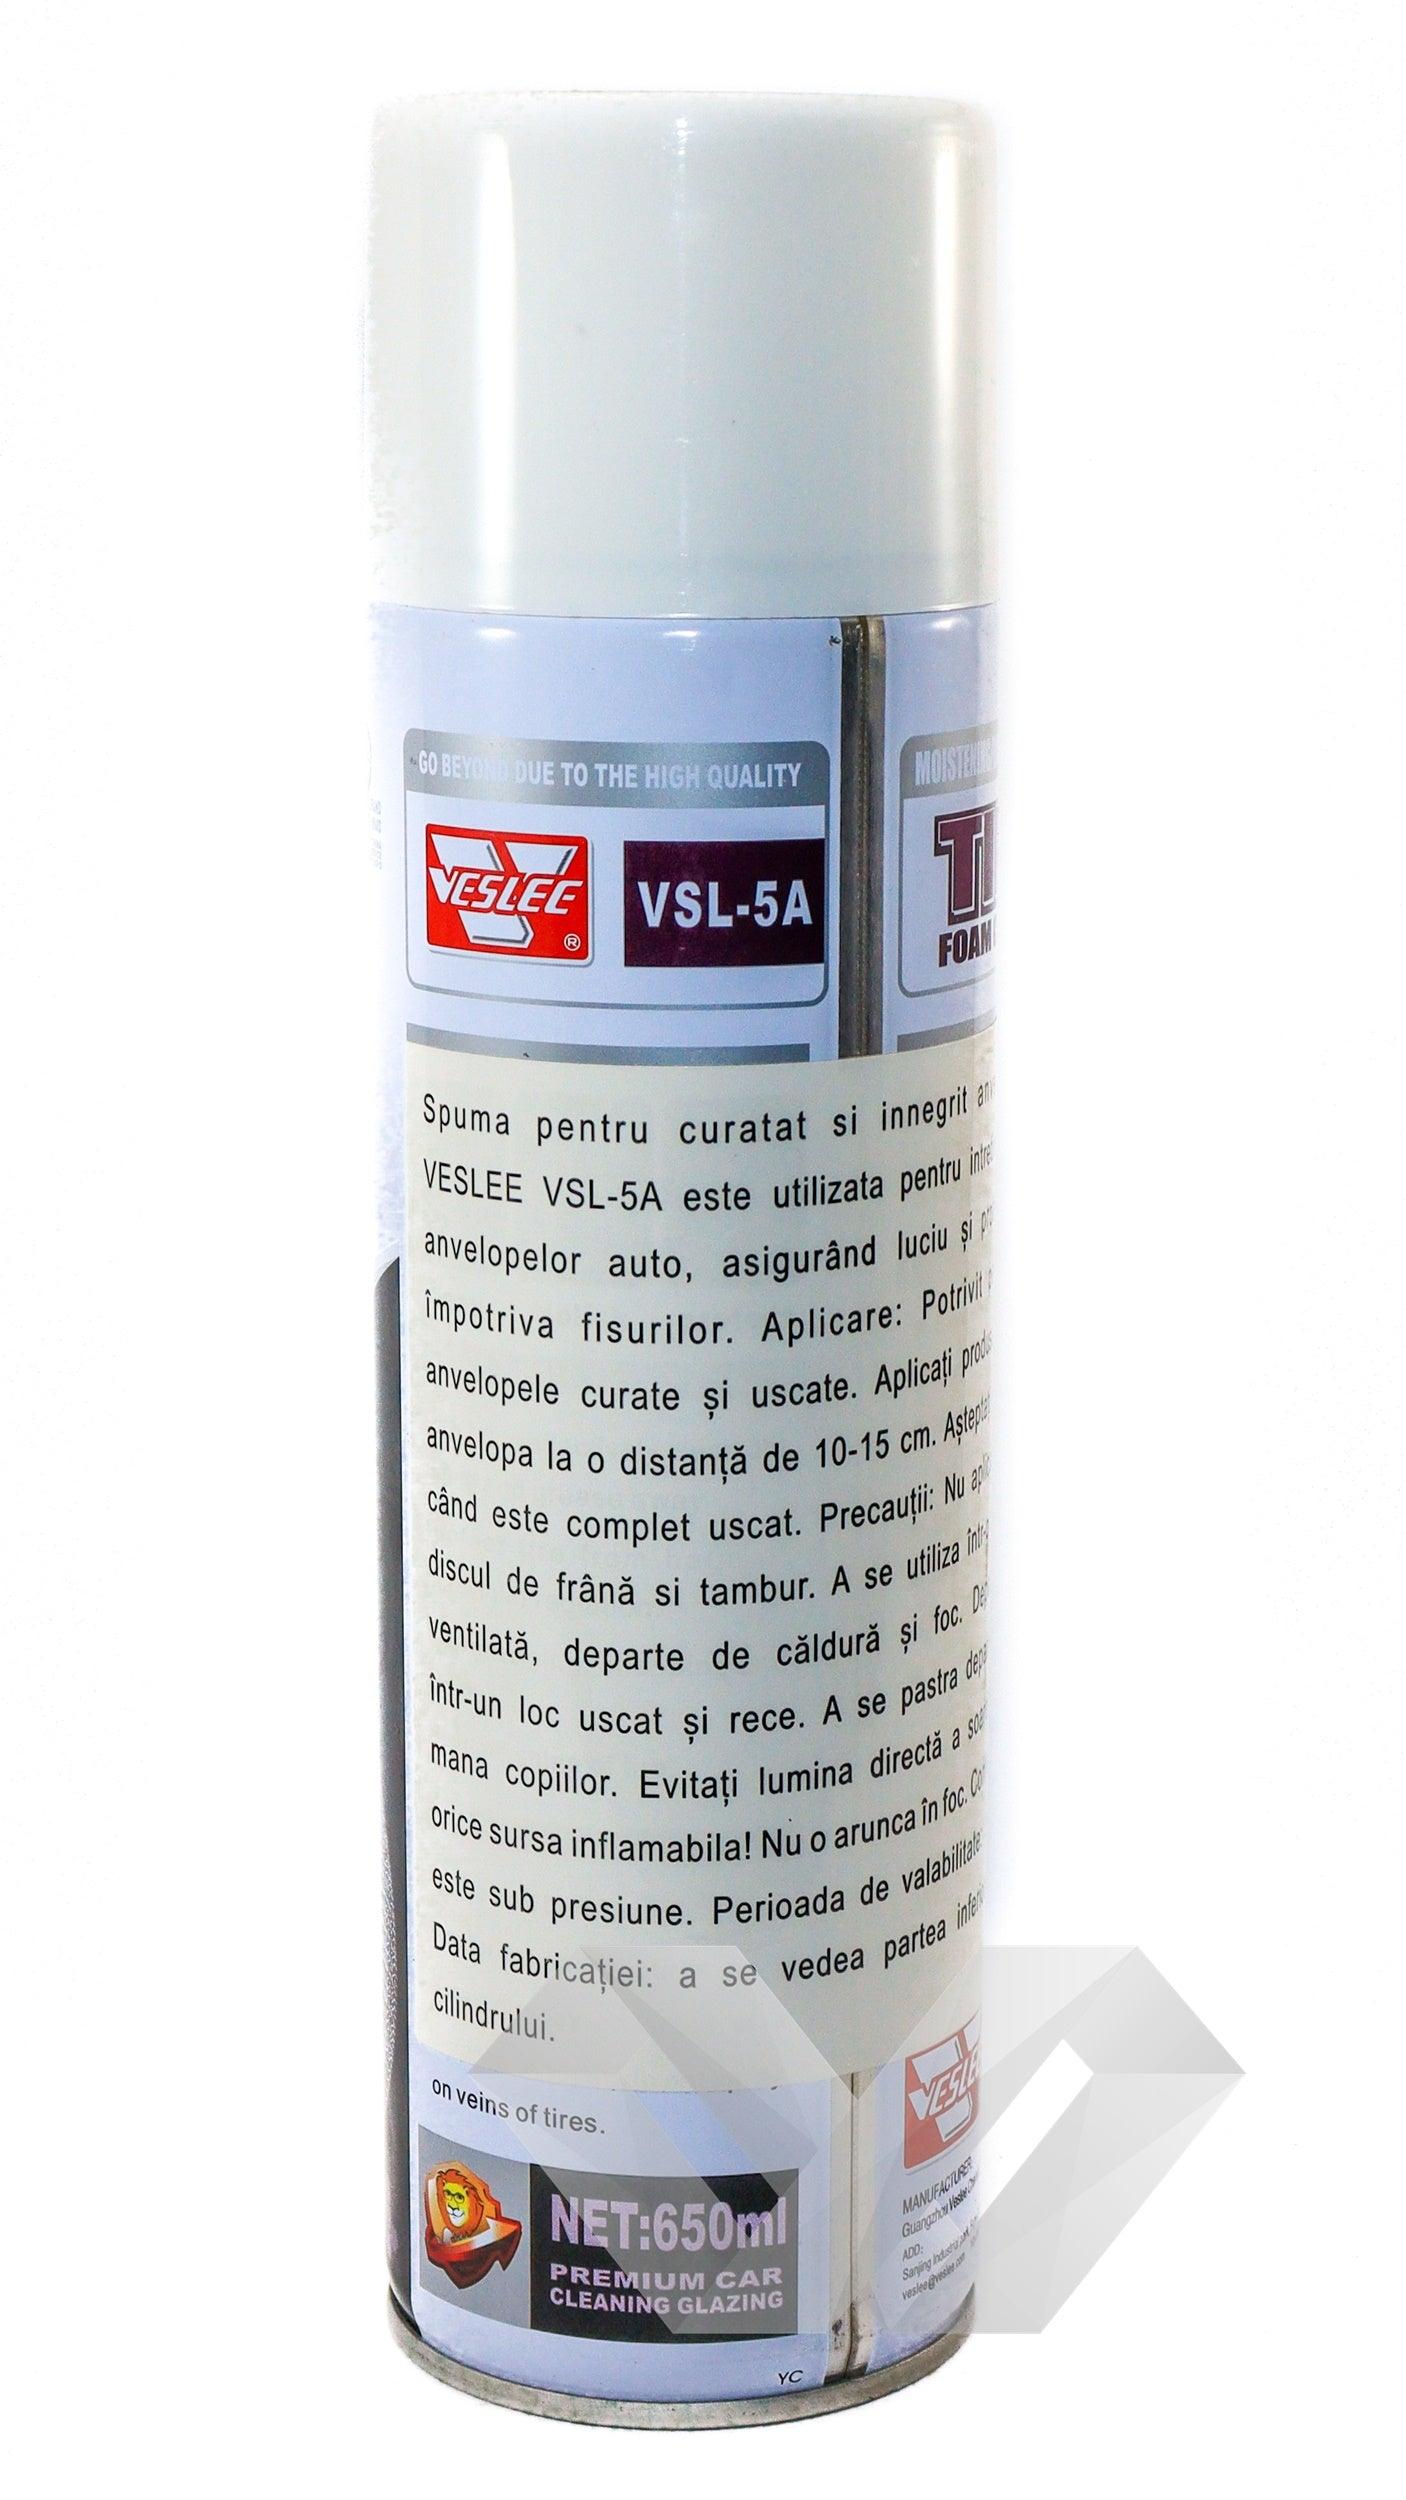 Spray curatat anvelope Veslee, 650ml